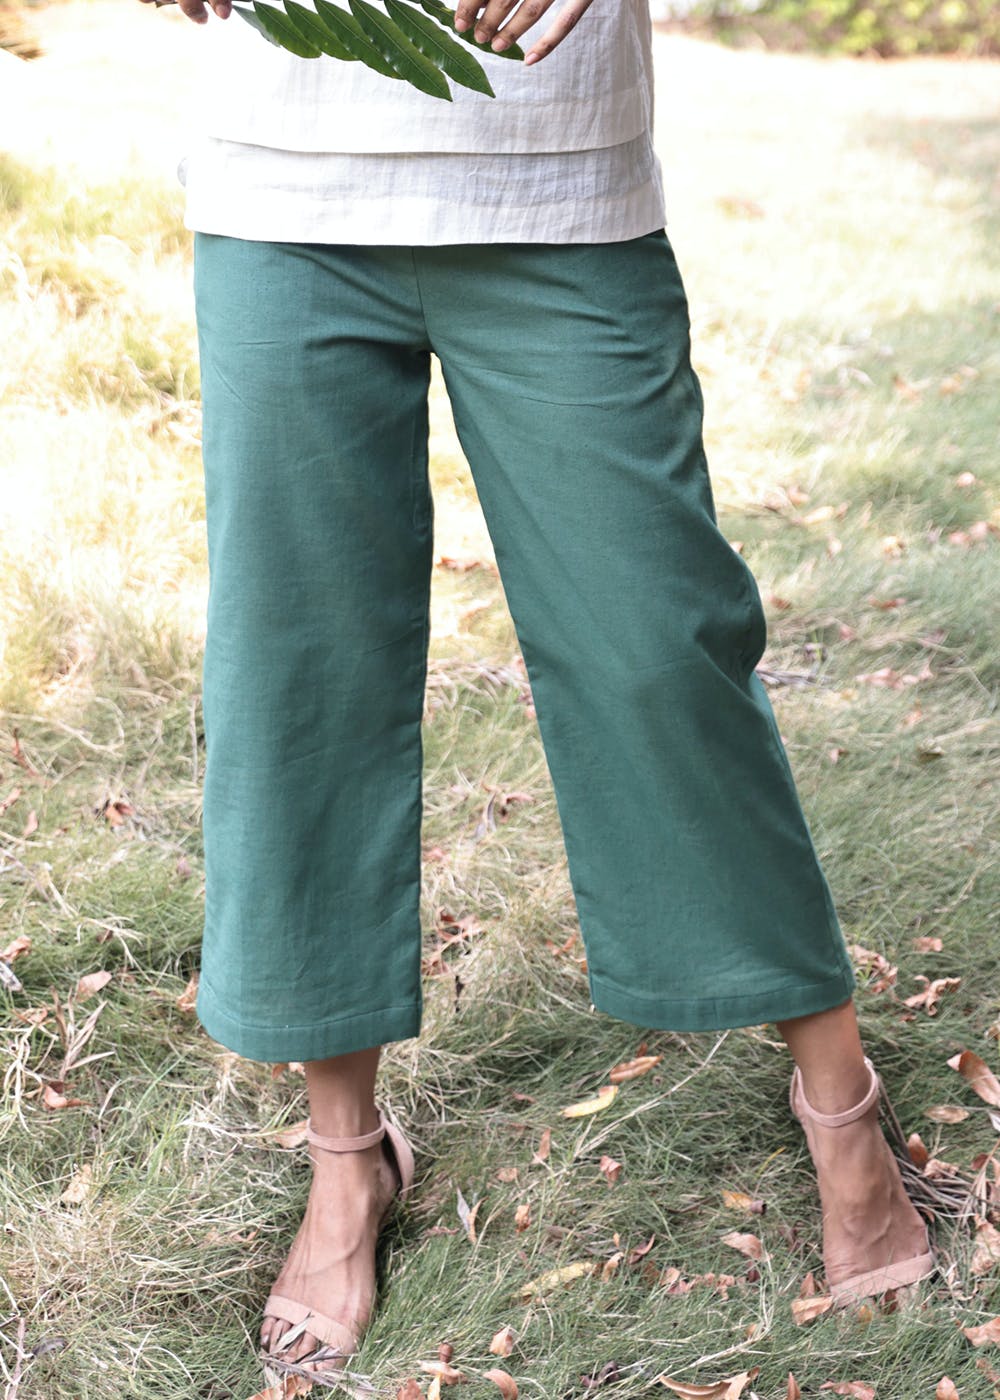 Get Rosalie Jade Green Pants at ₹ 2190 | LBB Shop